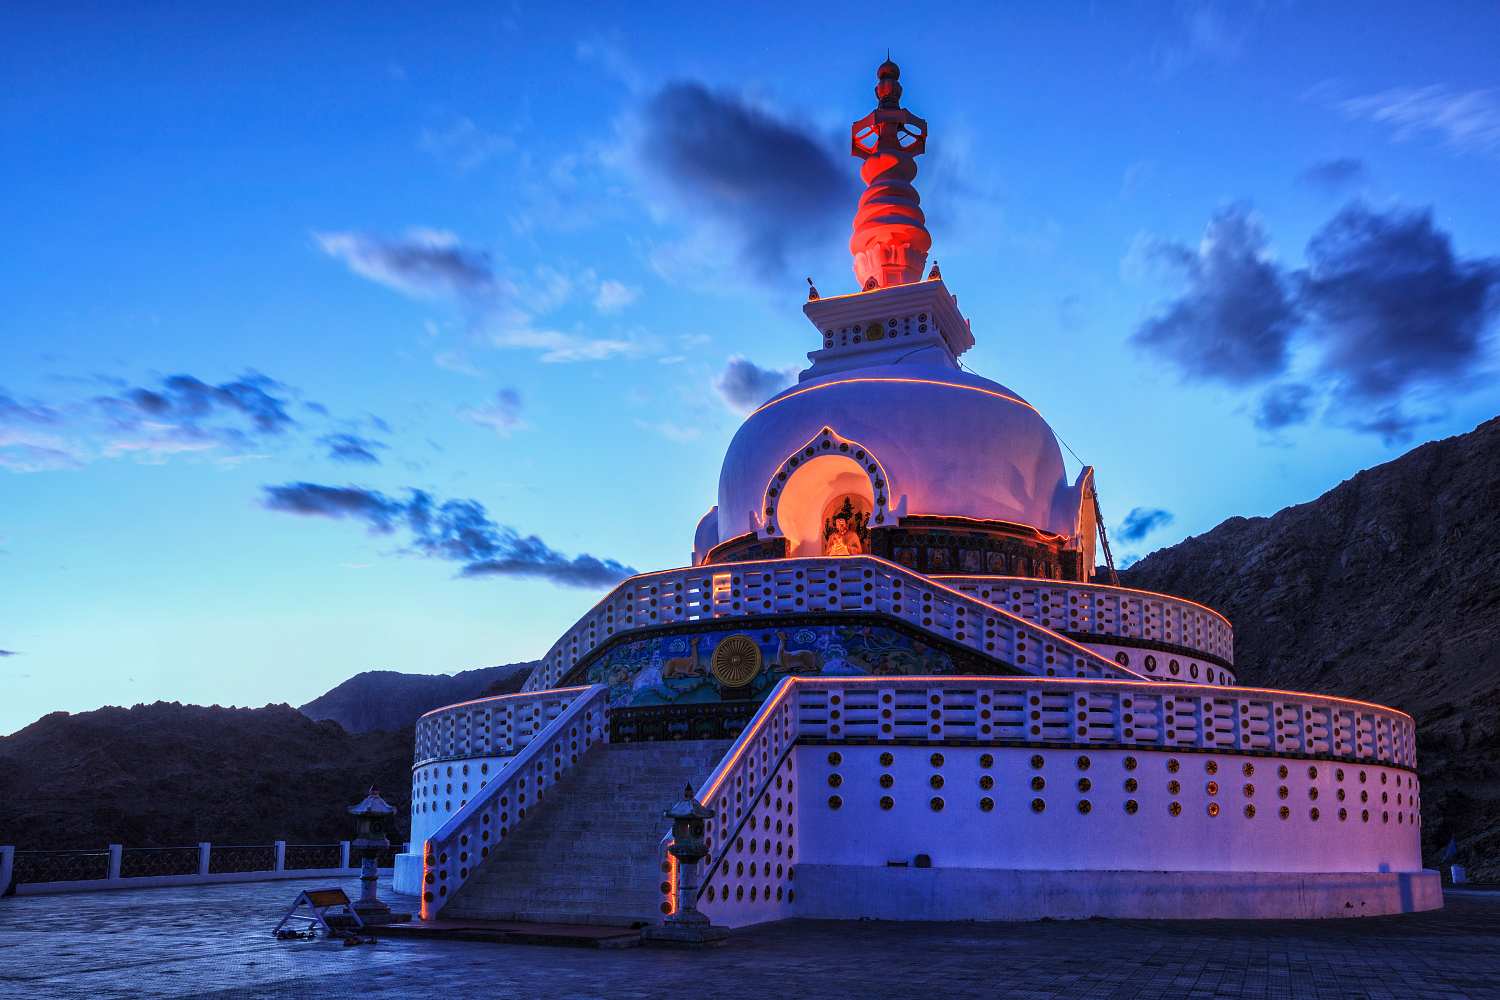 shanti-stupa